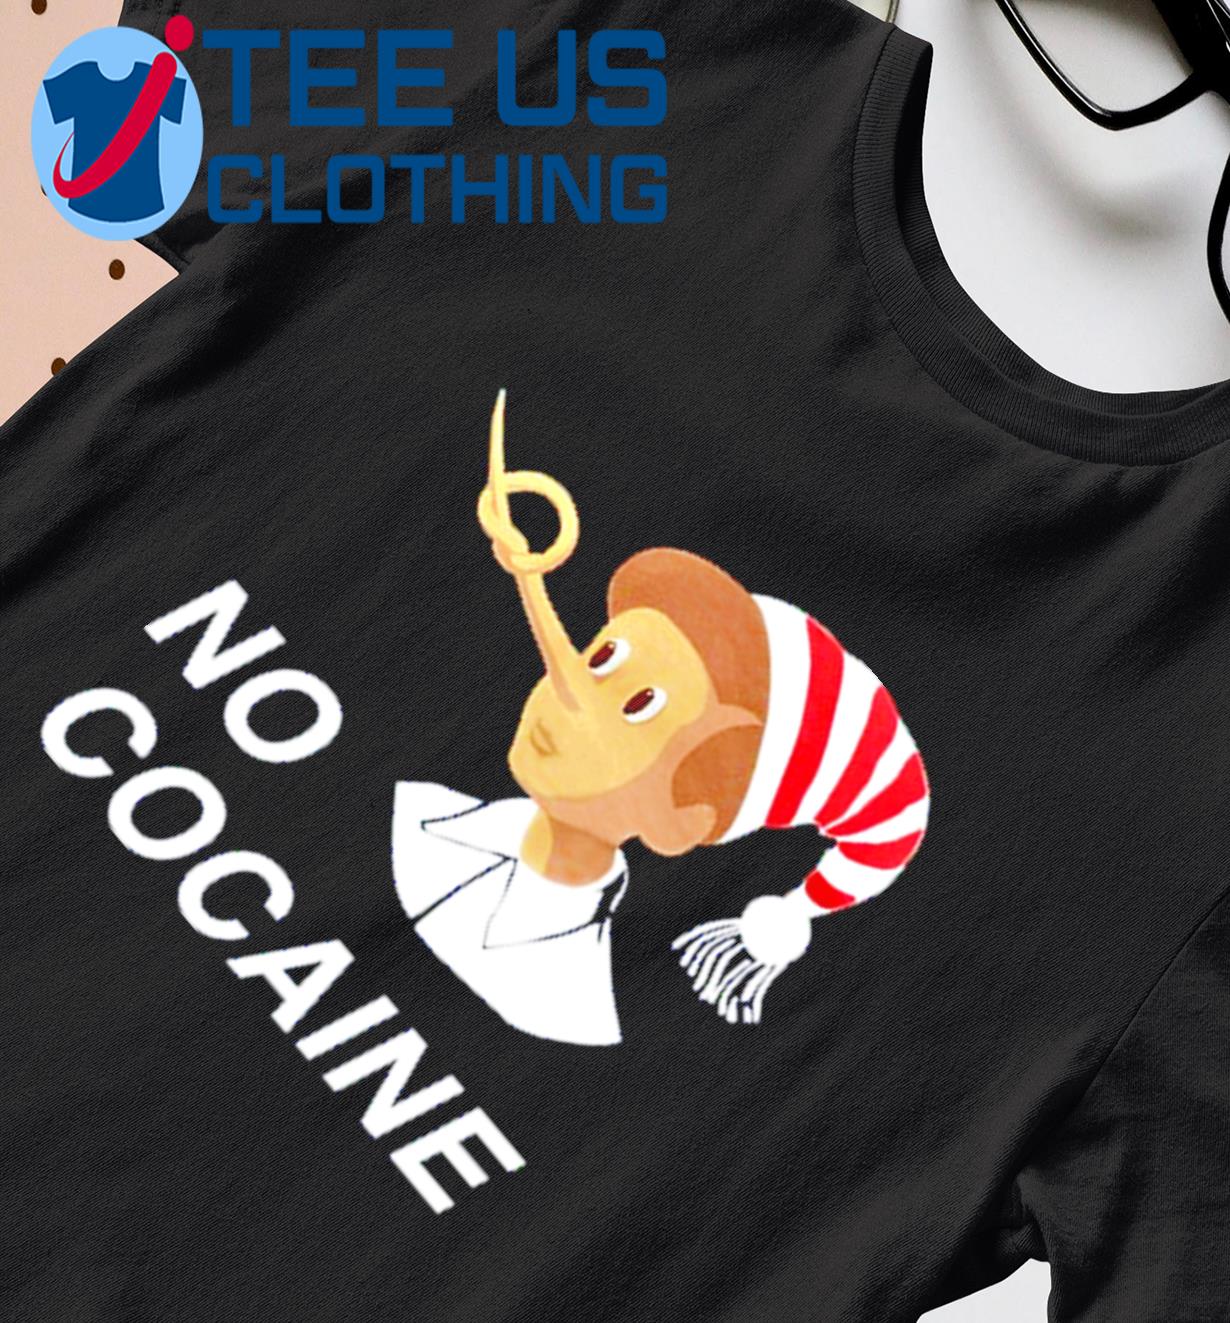 No Cocaine Pinocchio Shirt